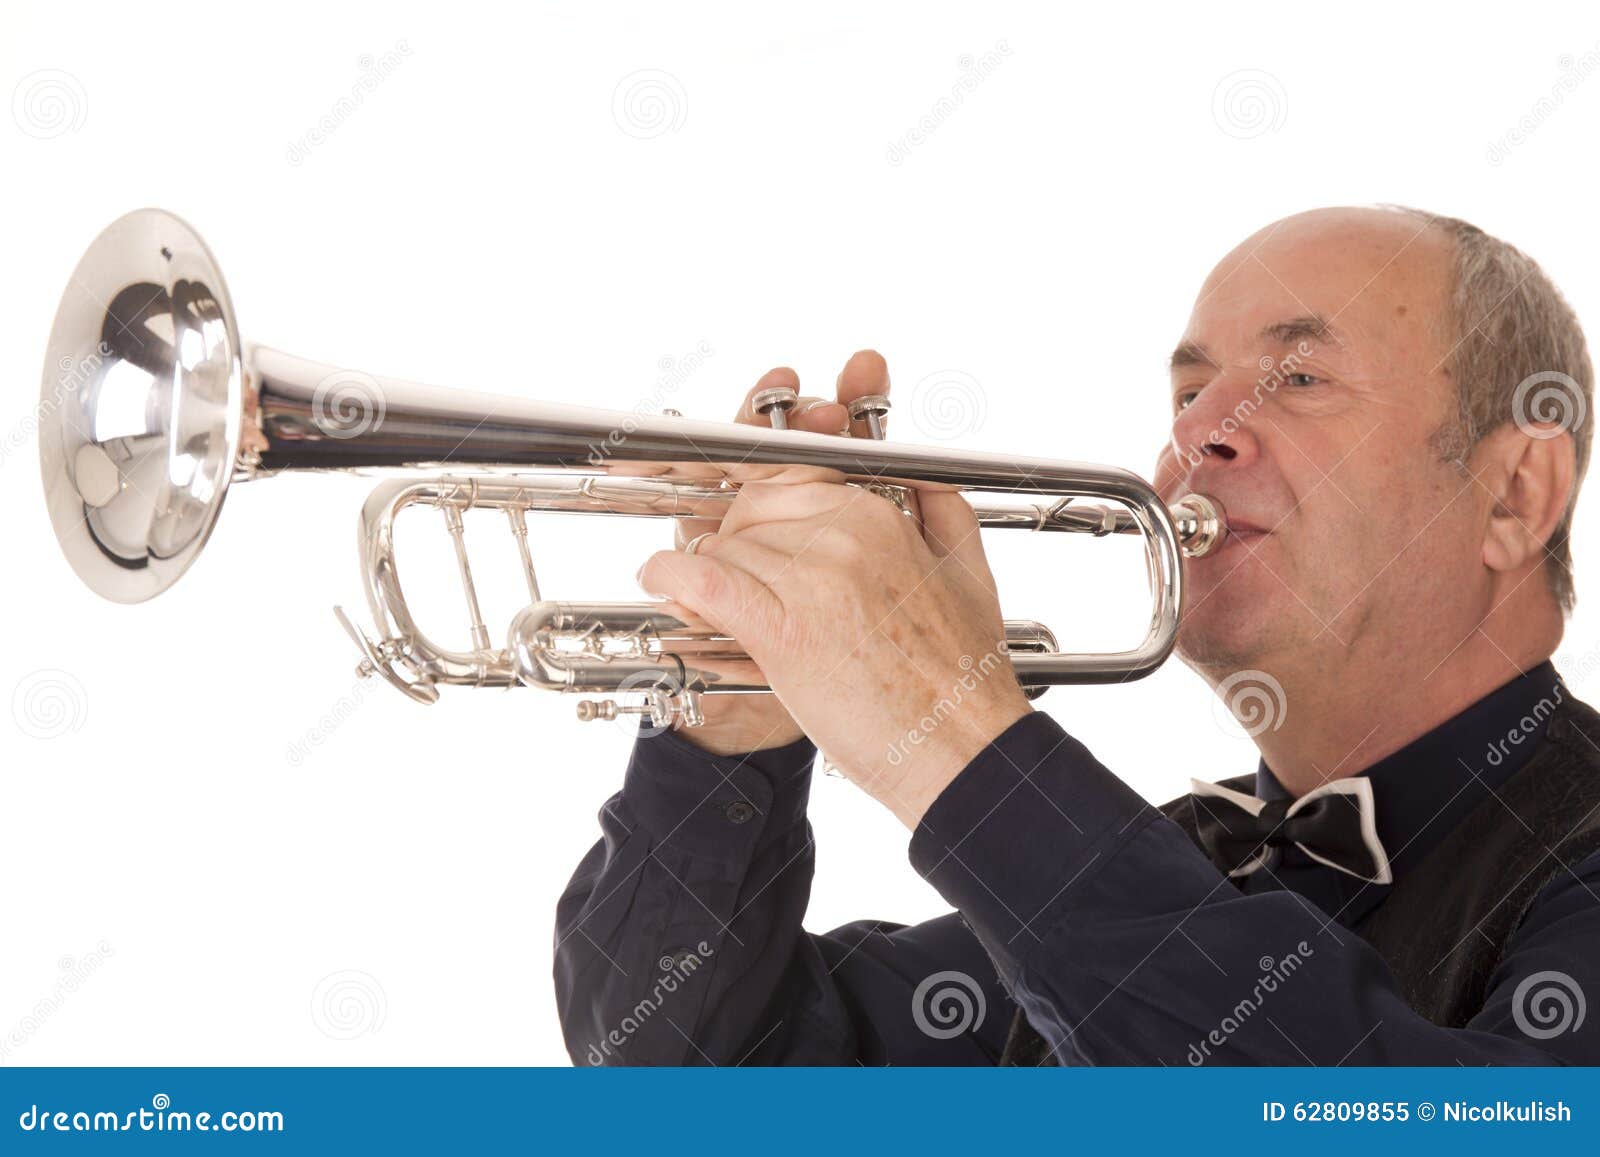 La trompette